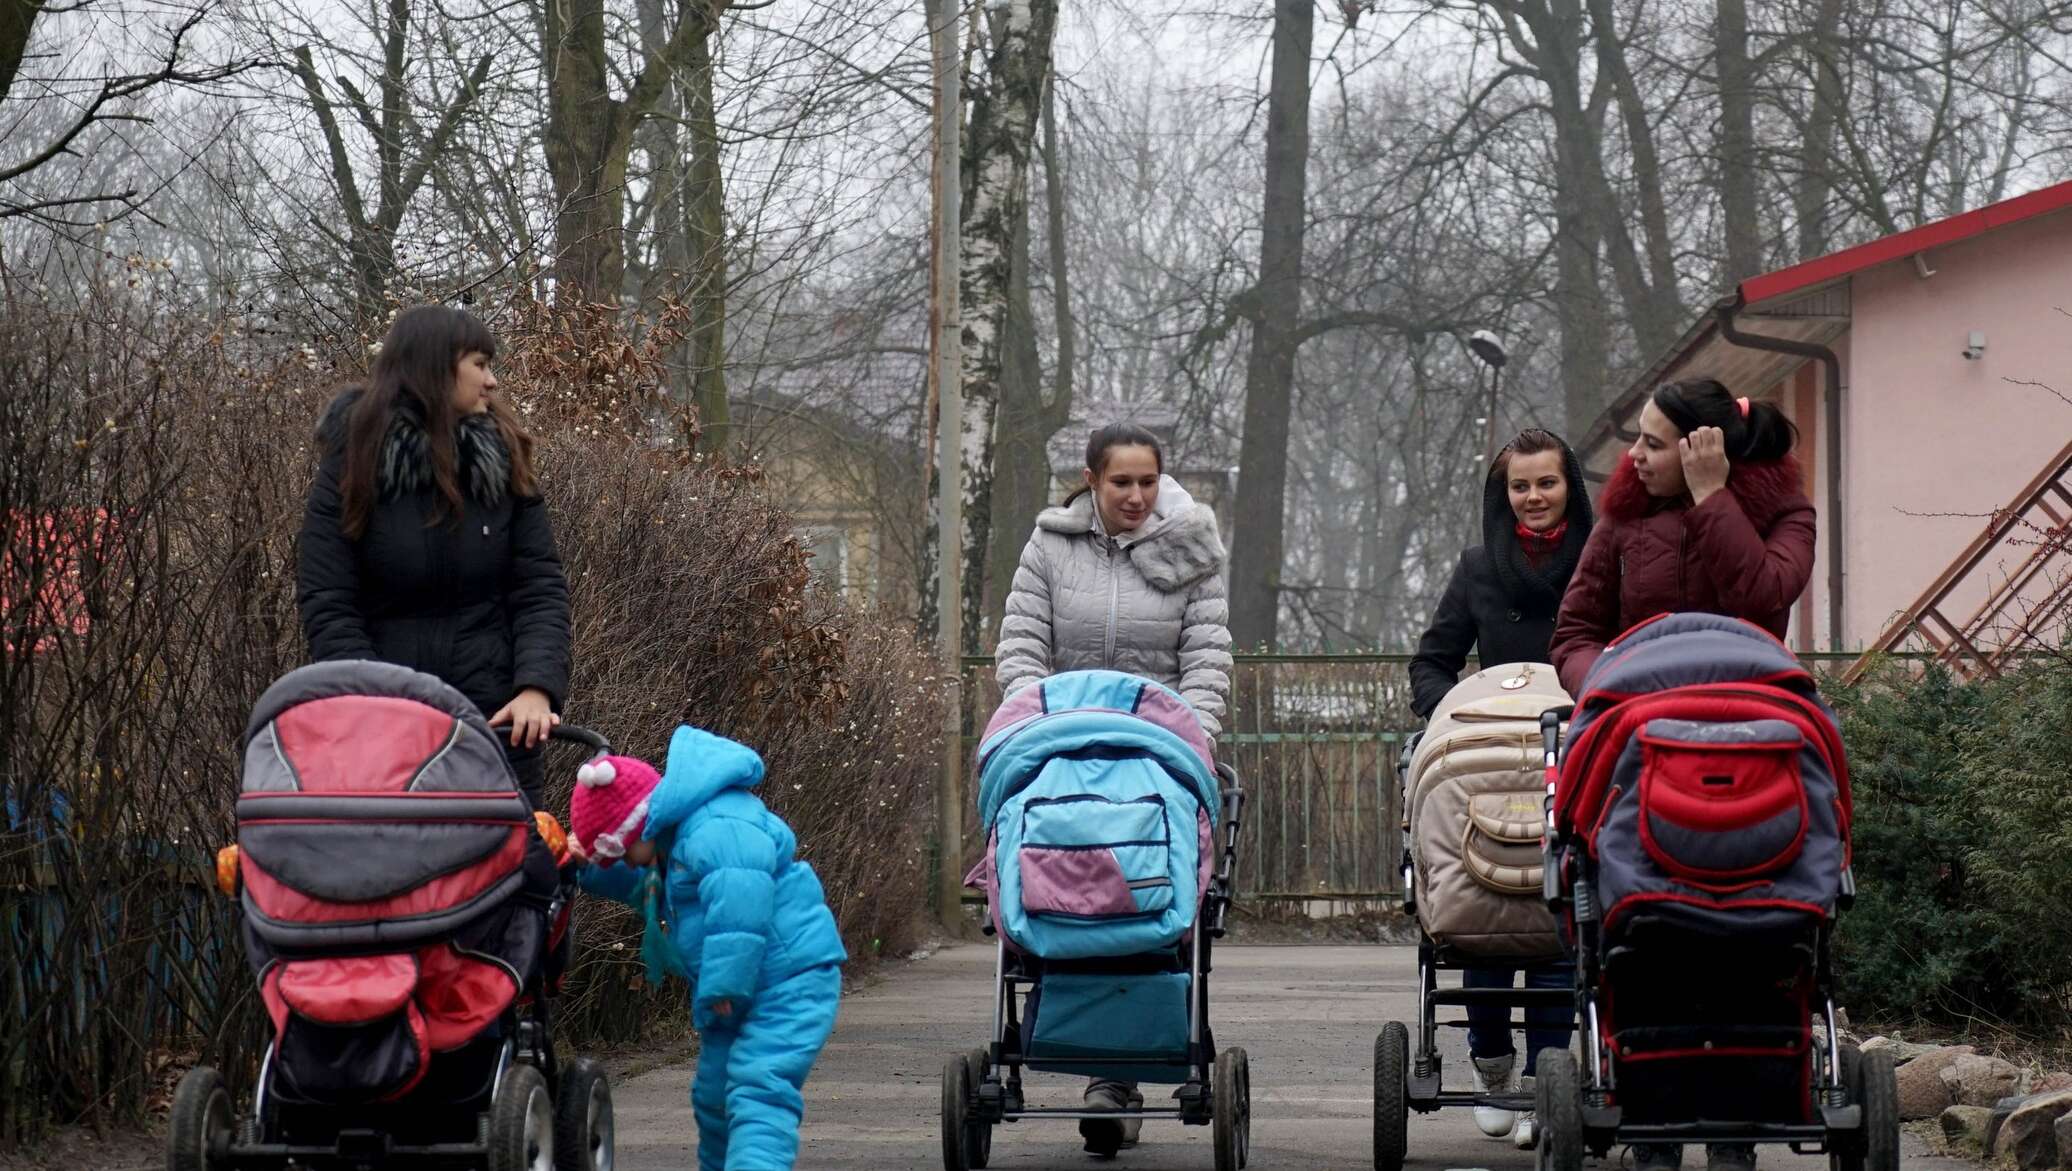 Коляски 4 мама. Мамы с колясками на прогулке. Многодетная семья на прогулке. Семья с коляской на прогулке. Многодетная мама на прогулке.